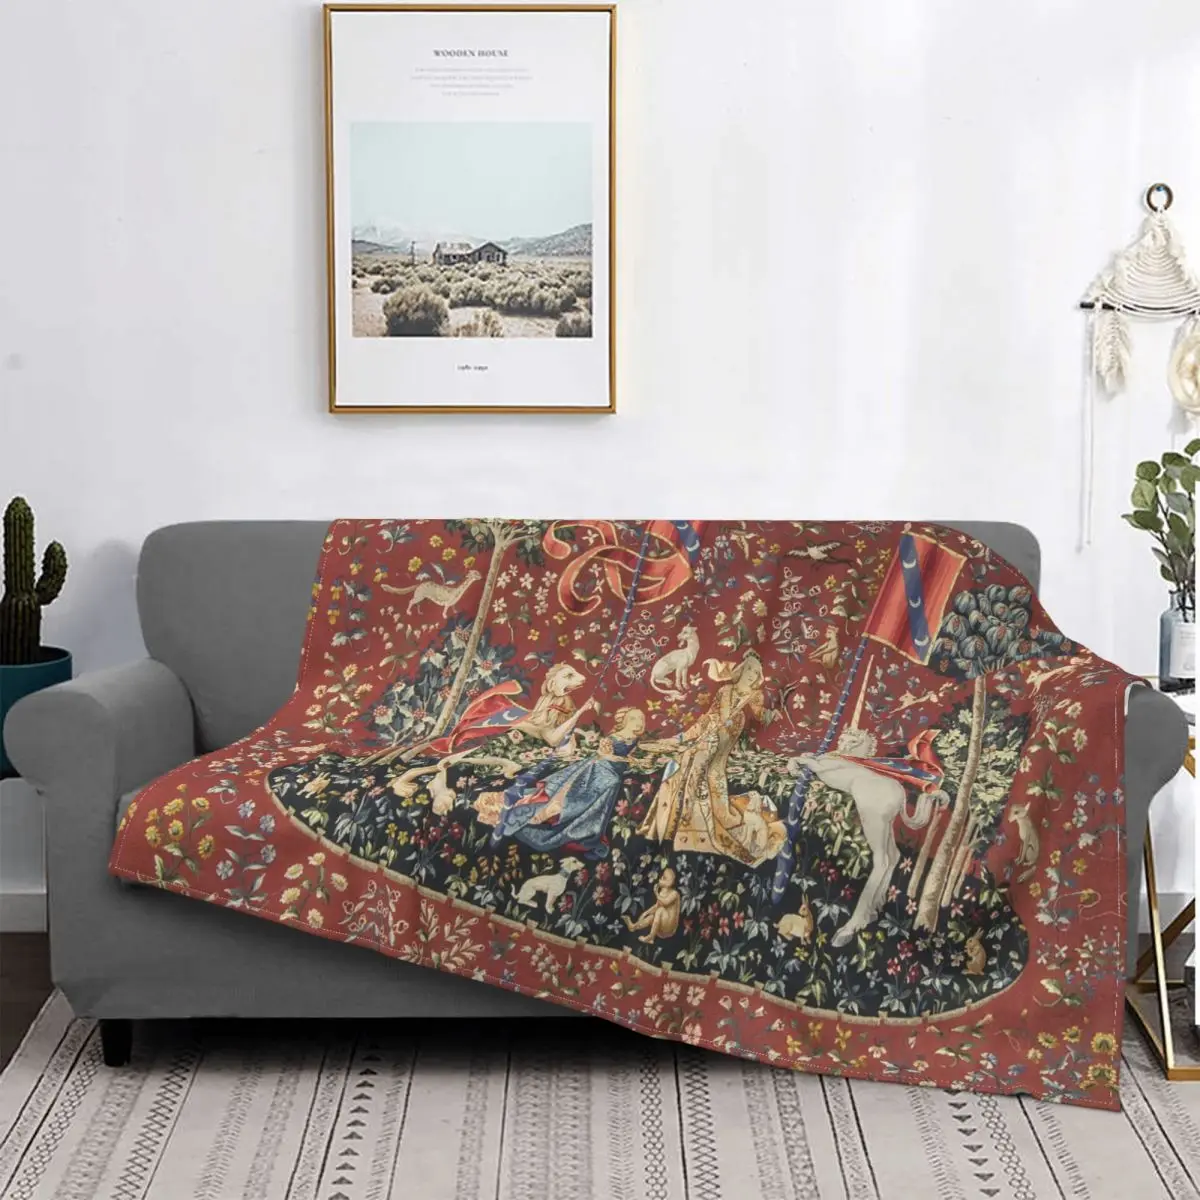 

Плюшевое фланелевое одеяло для женщин и единорогов, одеяло в ретро стиле средневековья и эпохи Возрождения, для дома, дивана, машины, супермягкое покрывало